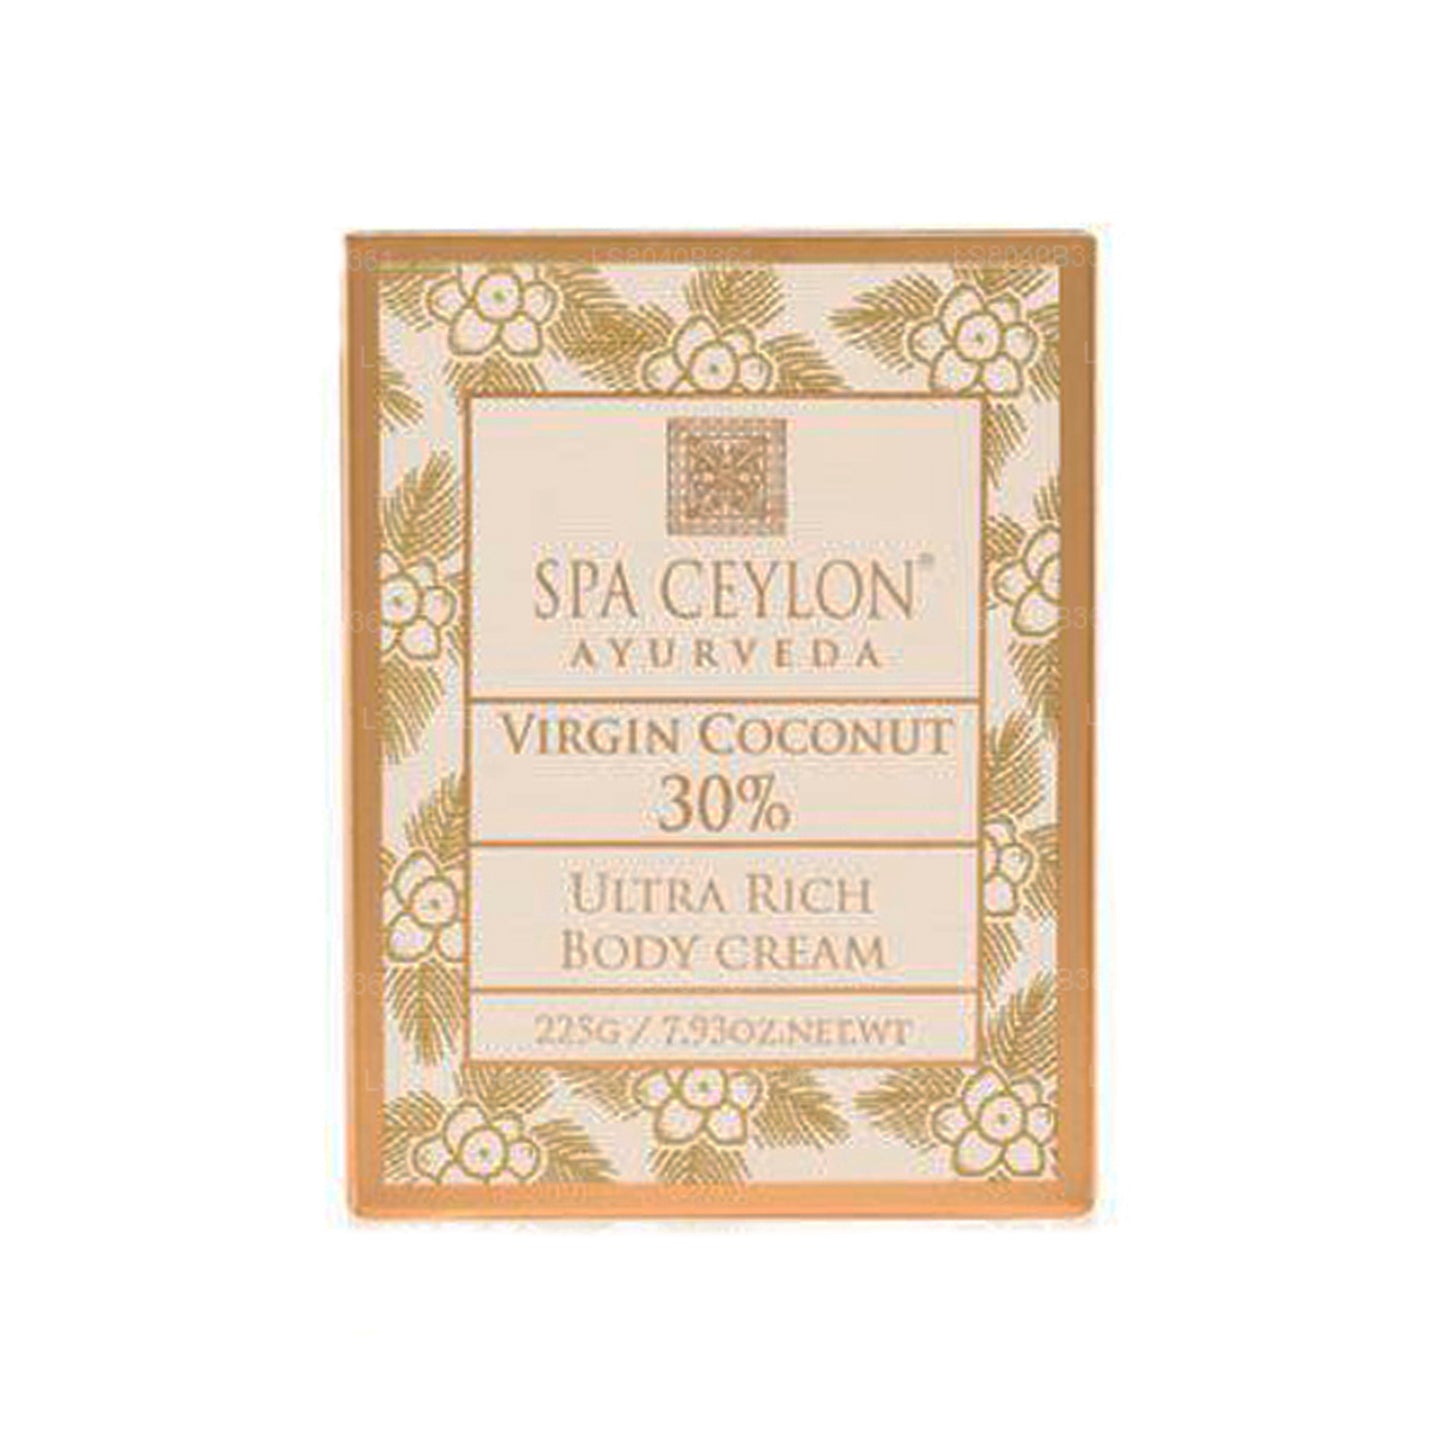 Spa Ceylon Virgin Coconut 30% - Extrem reichhaltige Körpercreme (200 g)